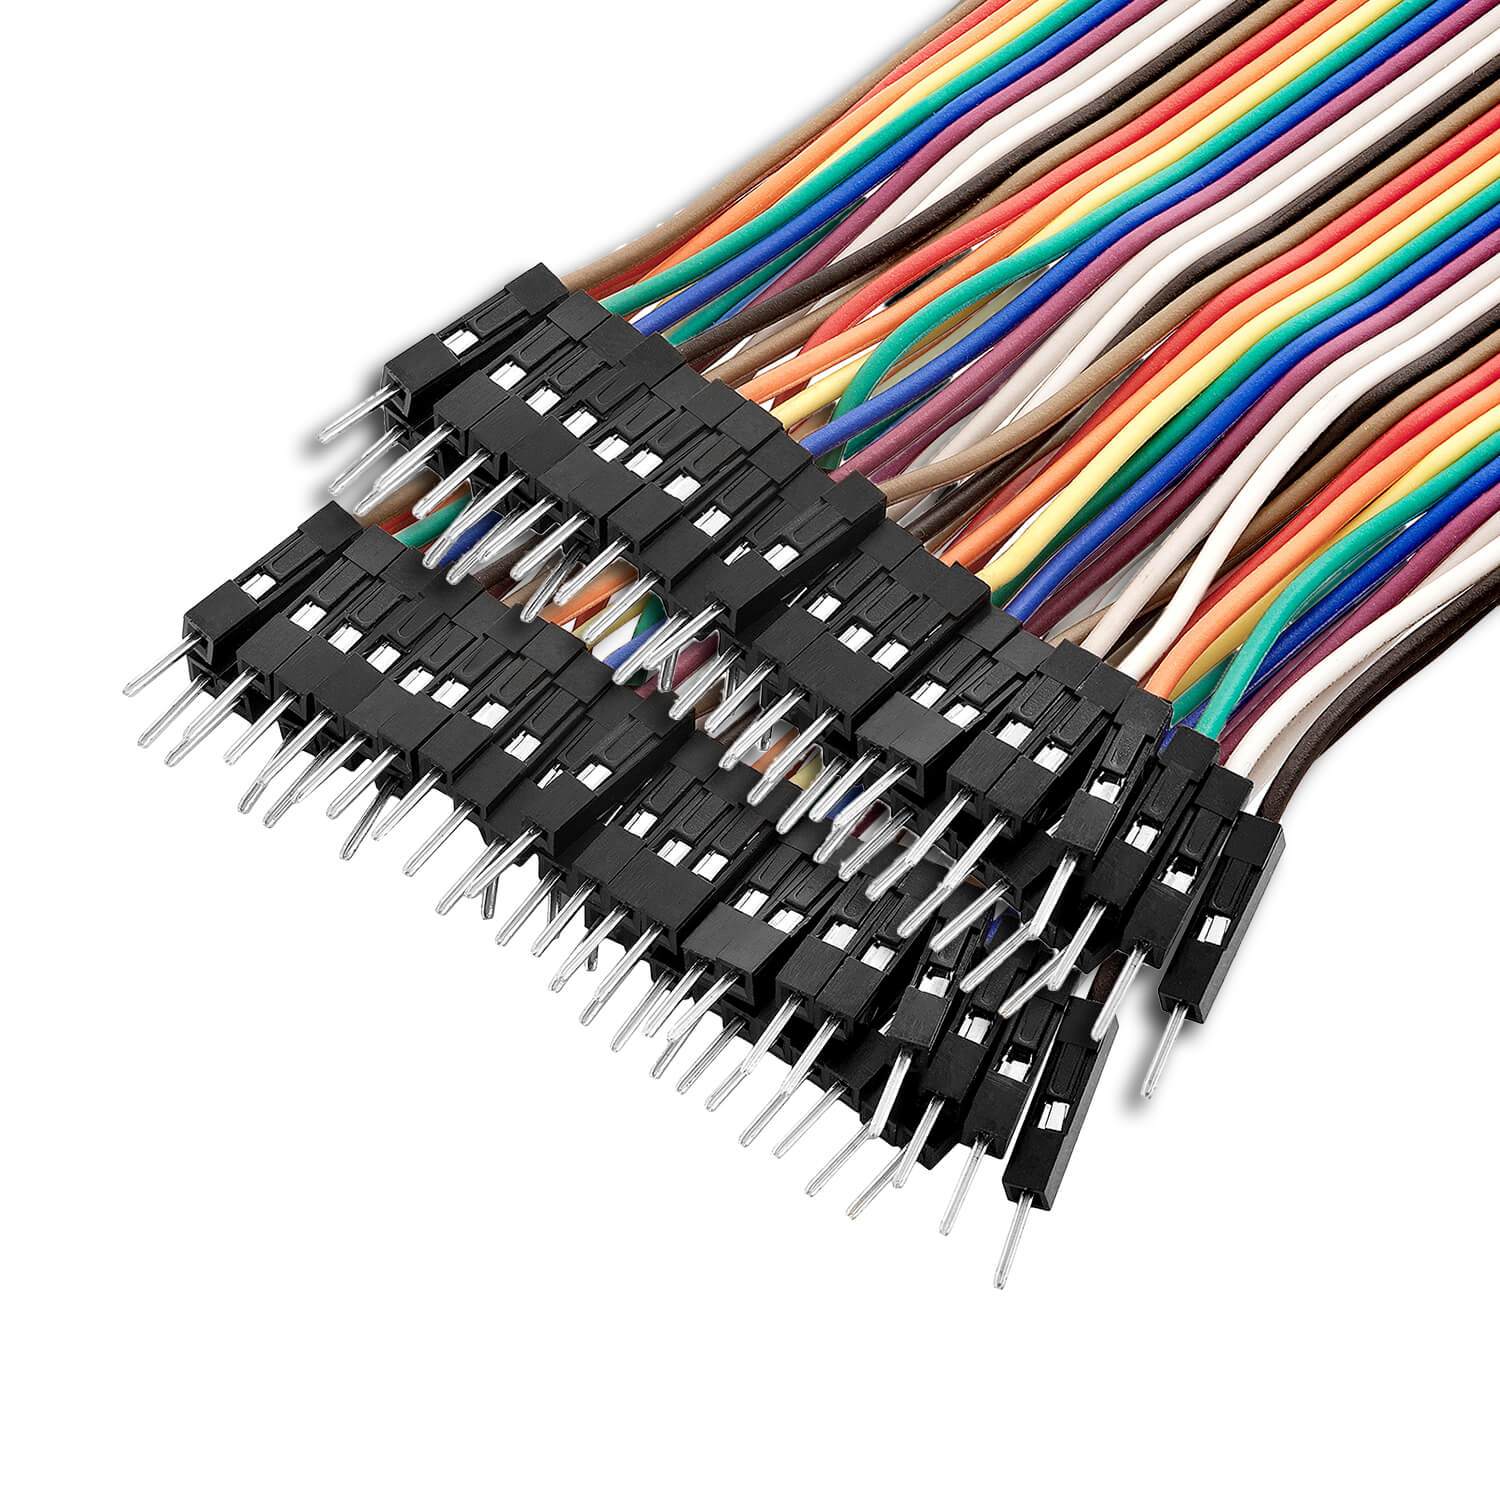 https://cdn.shopify.com/s/files/1/1509/1638/products/jumper-wire-kabel-3-x-40-stk-je-20-cm-m2m-f2m-f2f-kompatibel-mit-arduino-und-raspberry-pi-breadboard-746915.jpg?v=1679398755